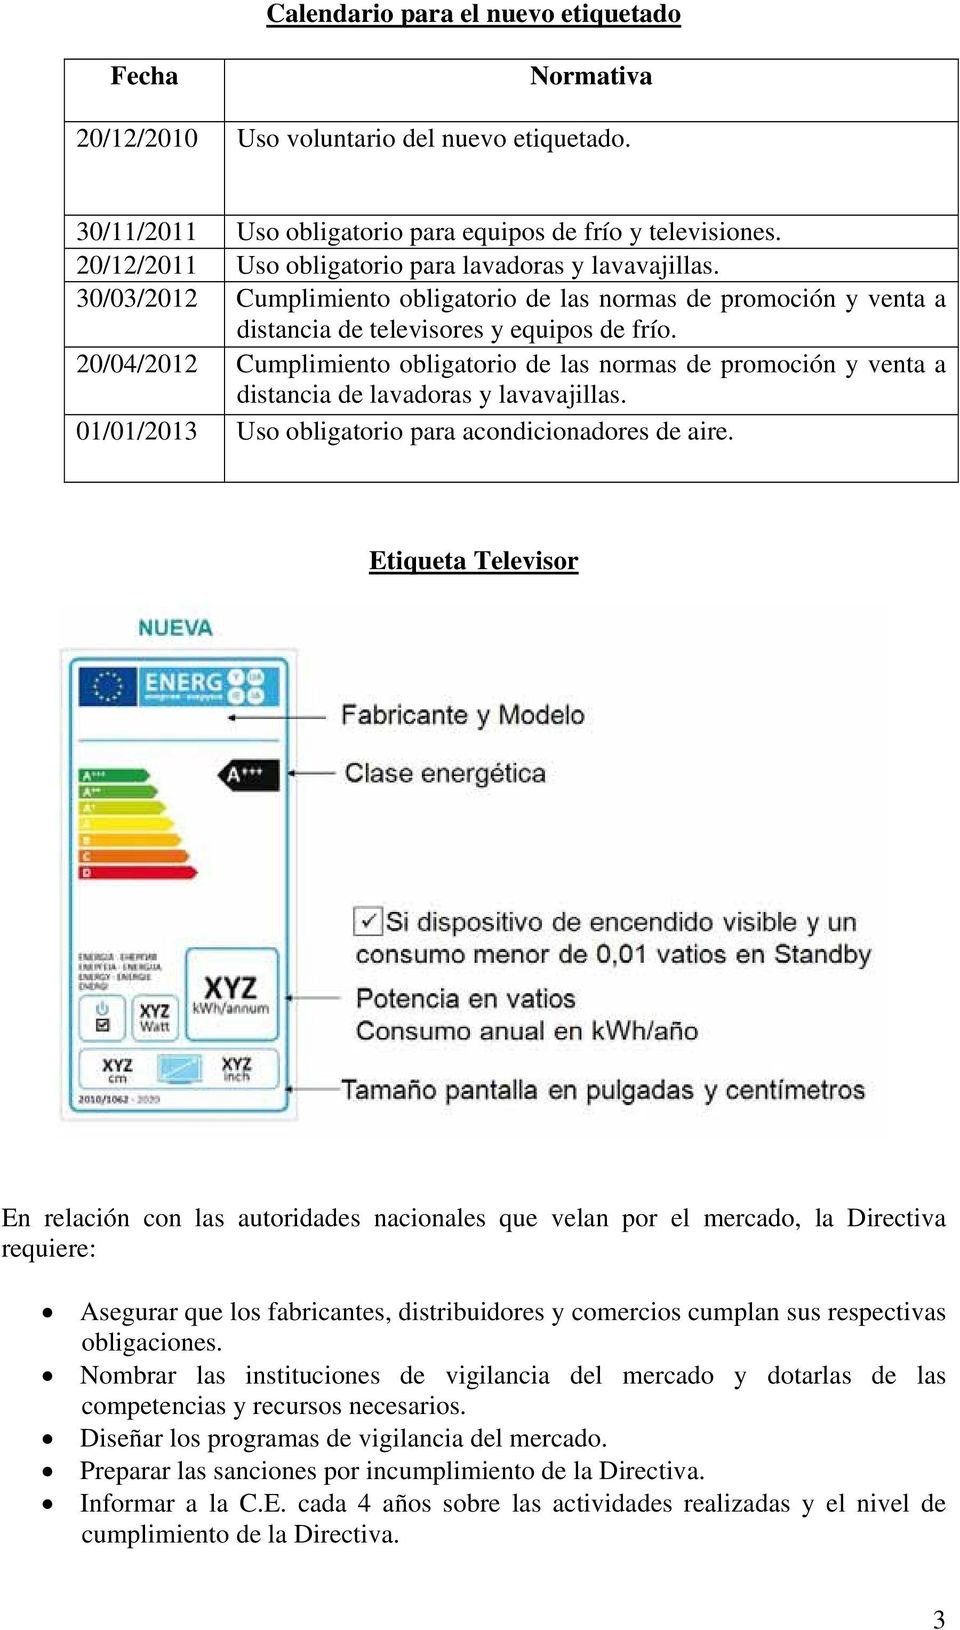 20/04/2012 Cumplimiento obligatorio de las normas de promoción y venta a distancia de lavadoras y lavavajillas. 01/01/2013 Uso obligatorio para acondicionadores de aire.